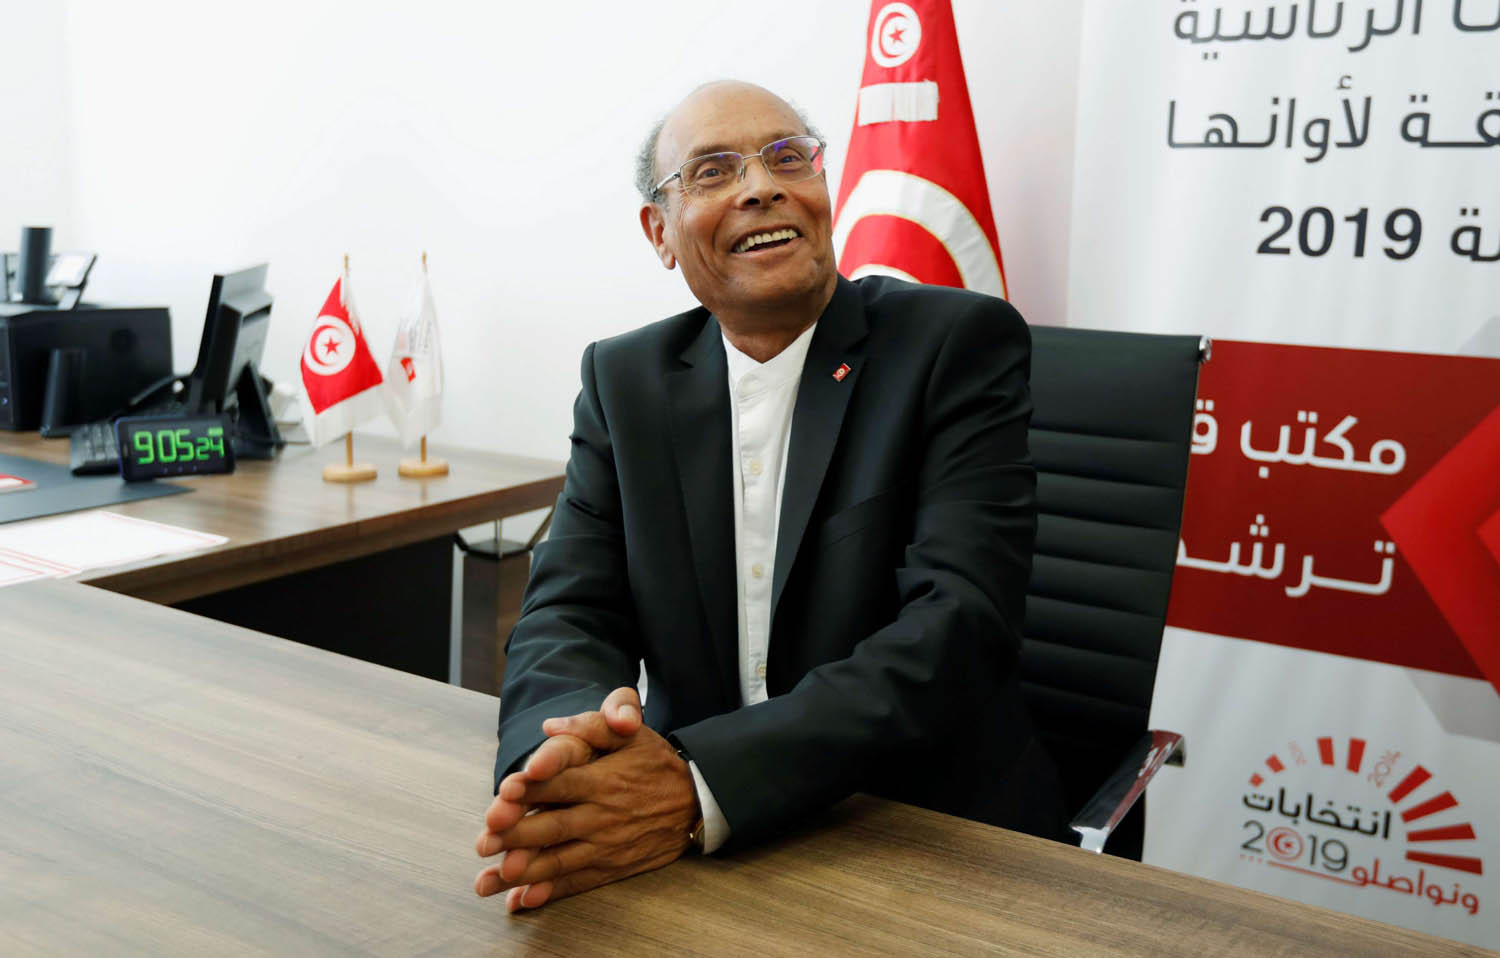 الرئيس التونسي السابق المنصف المرزوقي يقدم اوراق ترشحه